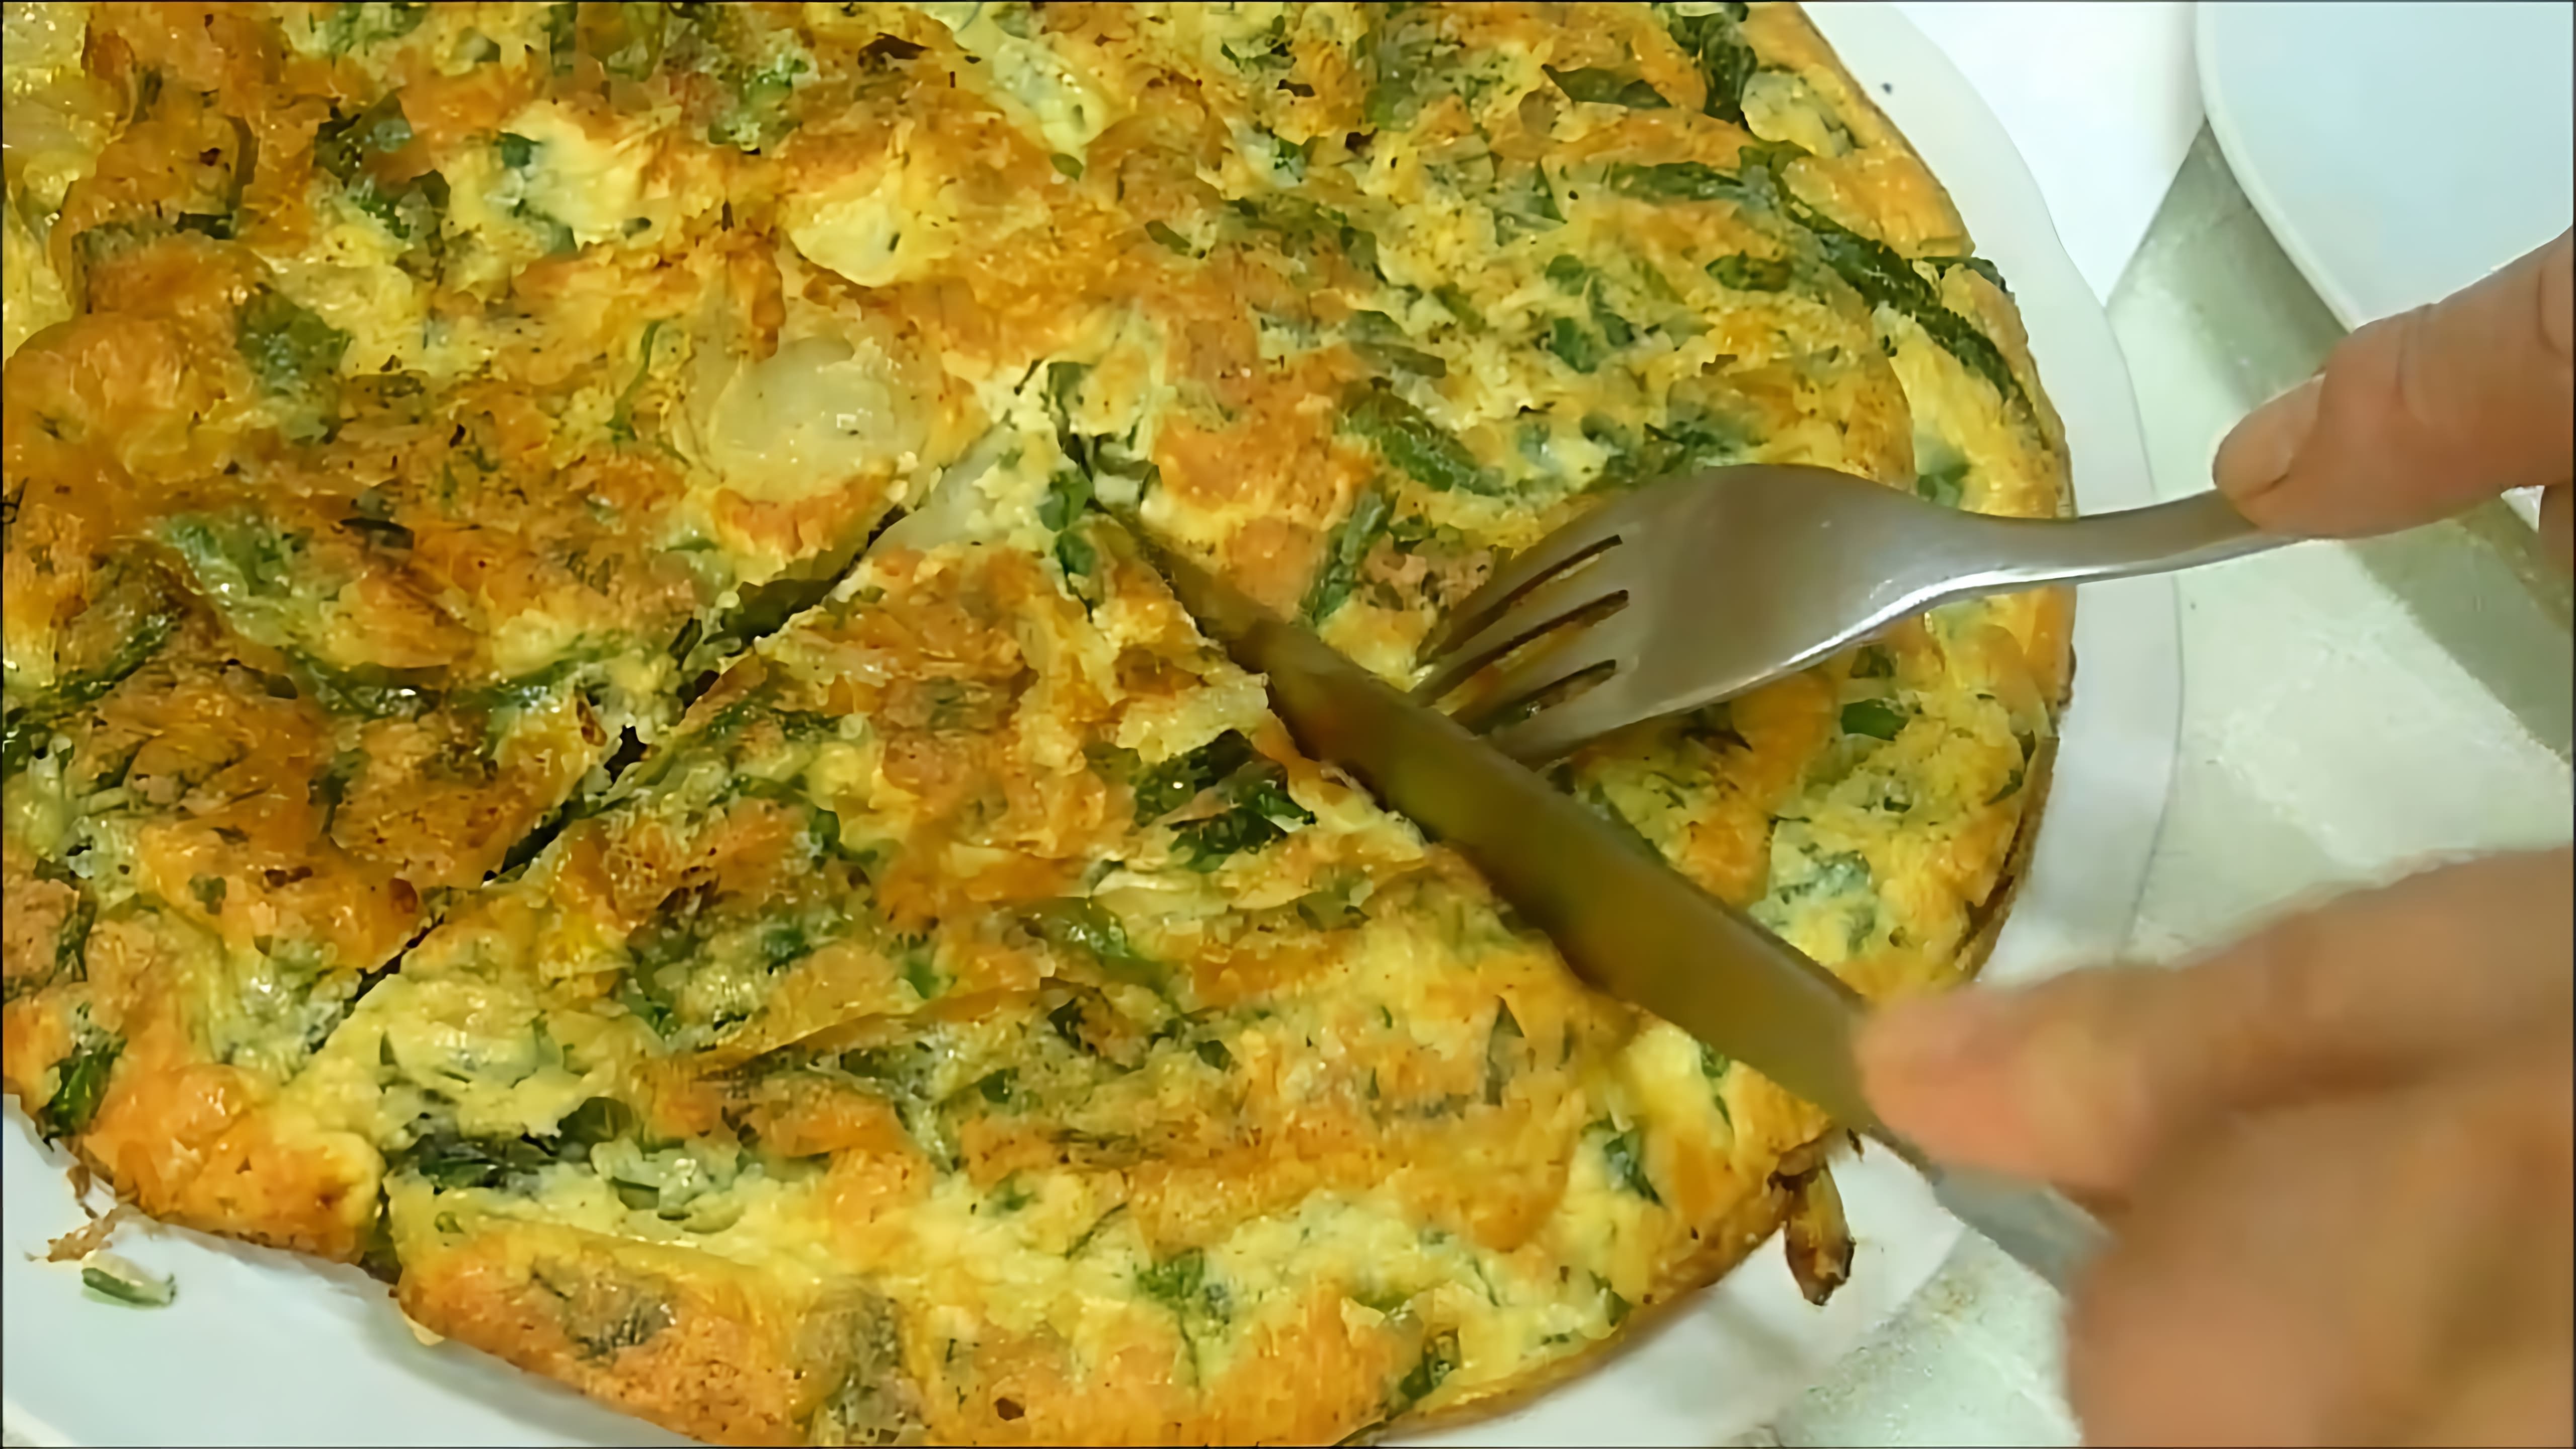 В этом видео-ролике будет показан процесс приготовления итальянского блюда - фриттаты с использованием яиц, сыра и спаржи